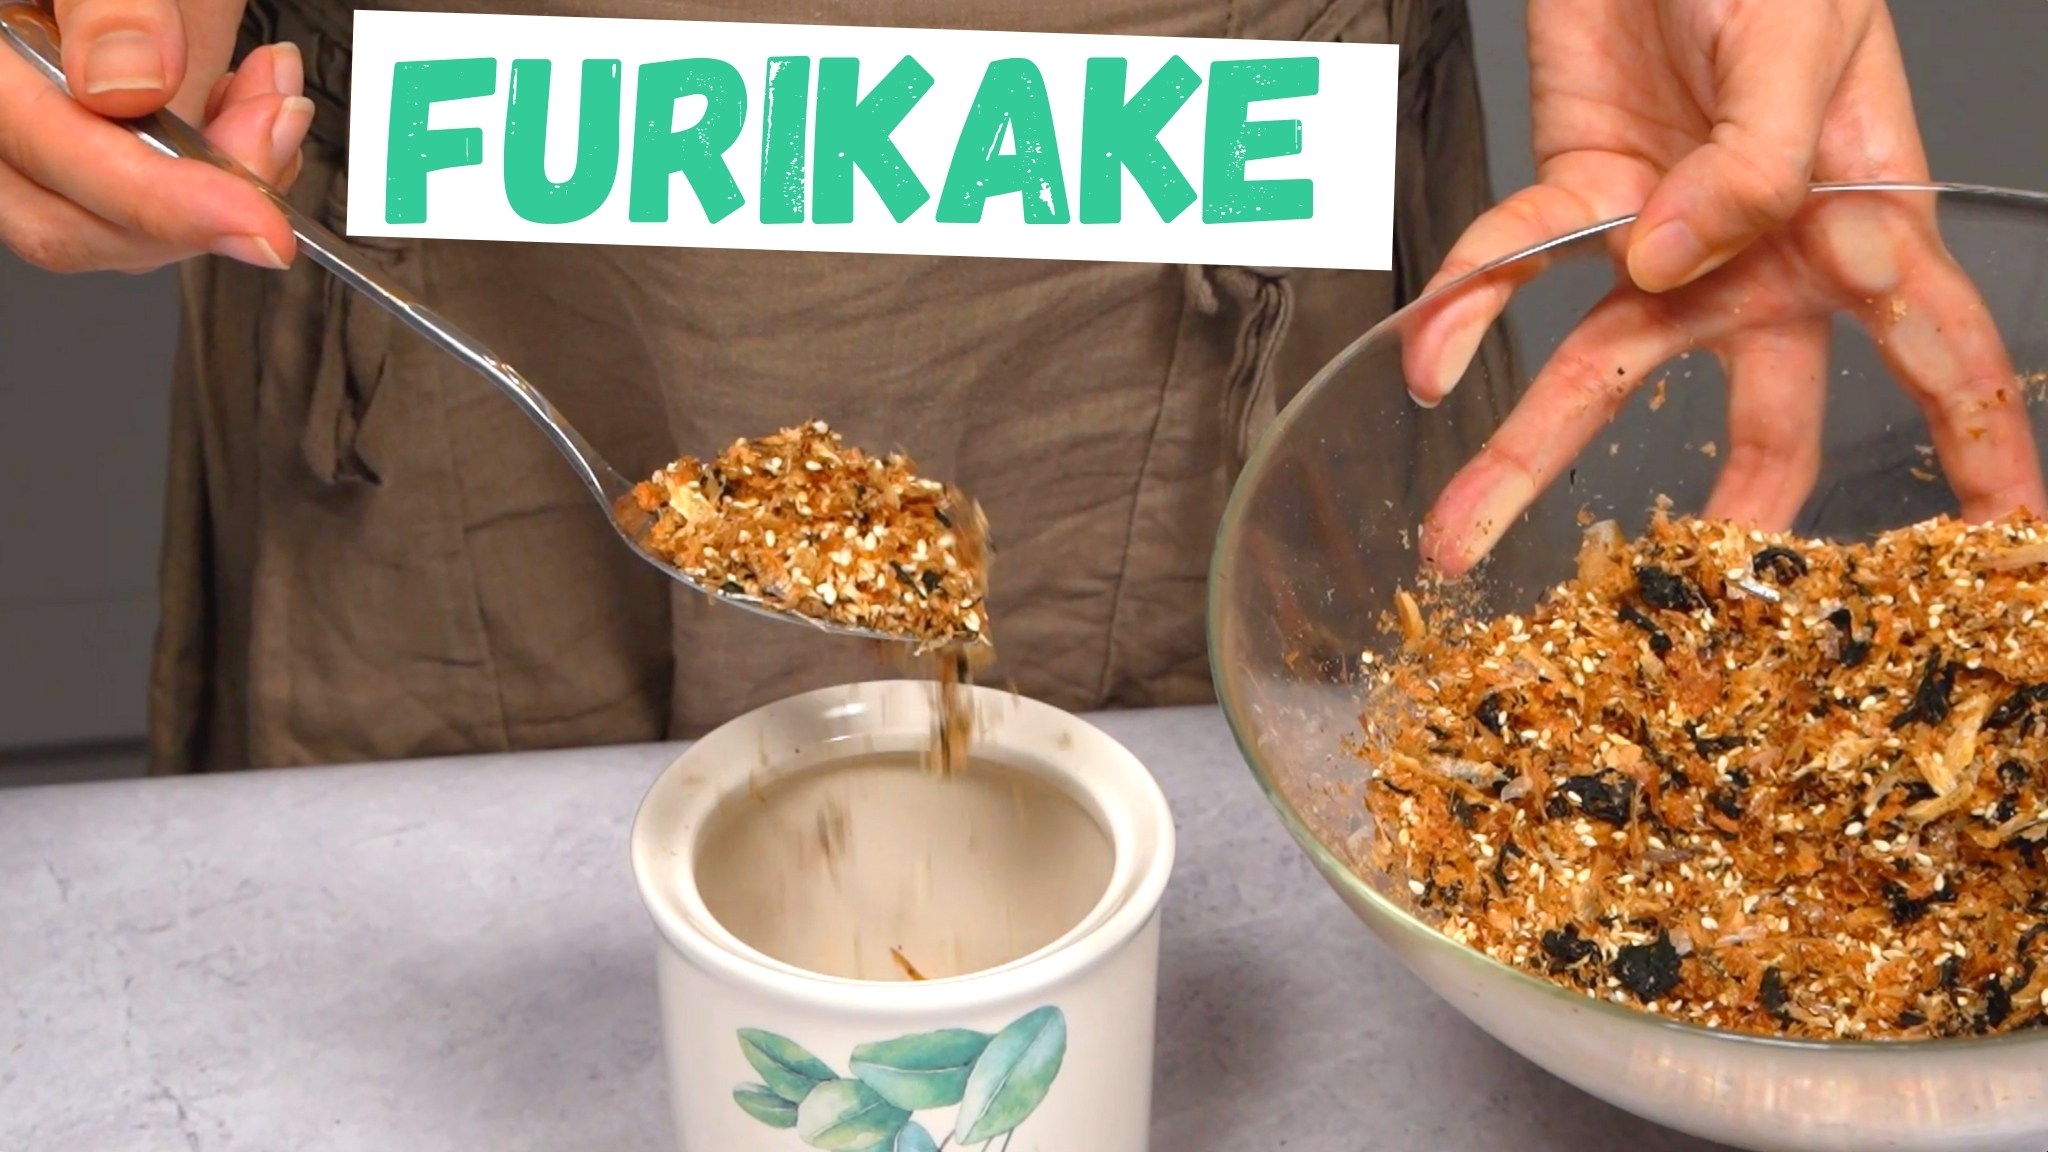 Best Furikake Seasoning: Most Popular Brands & Flavors